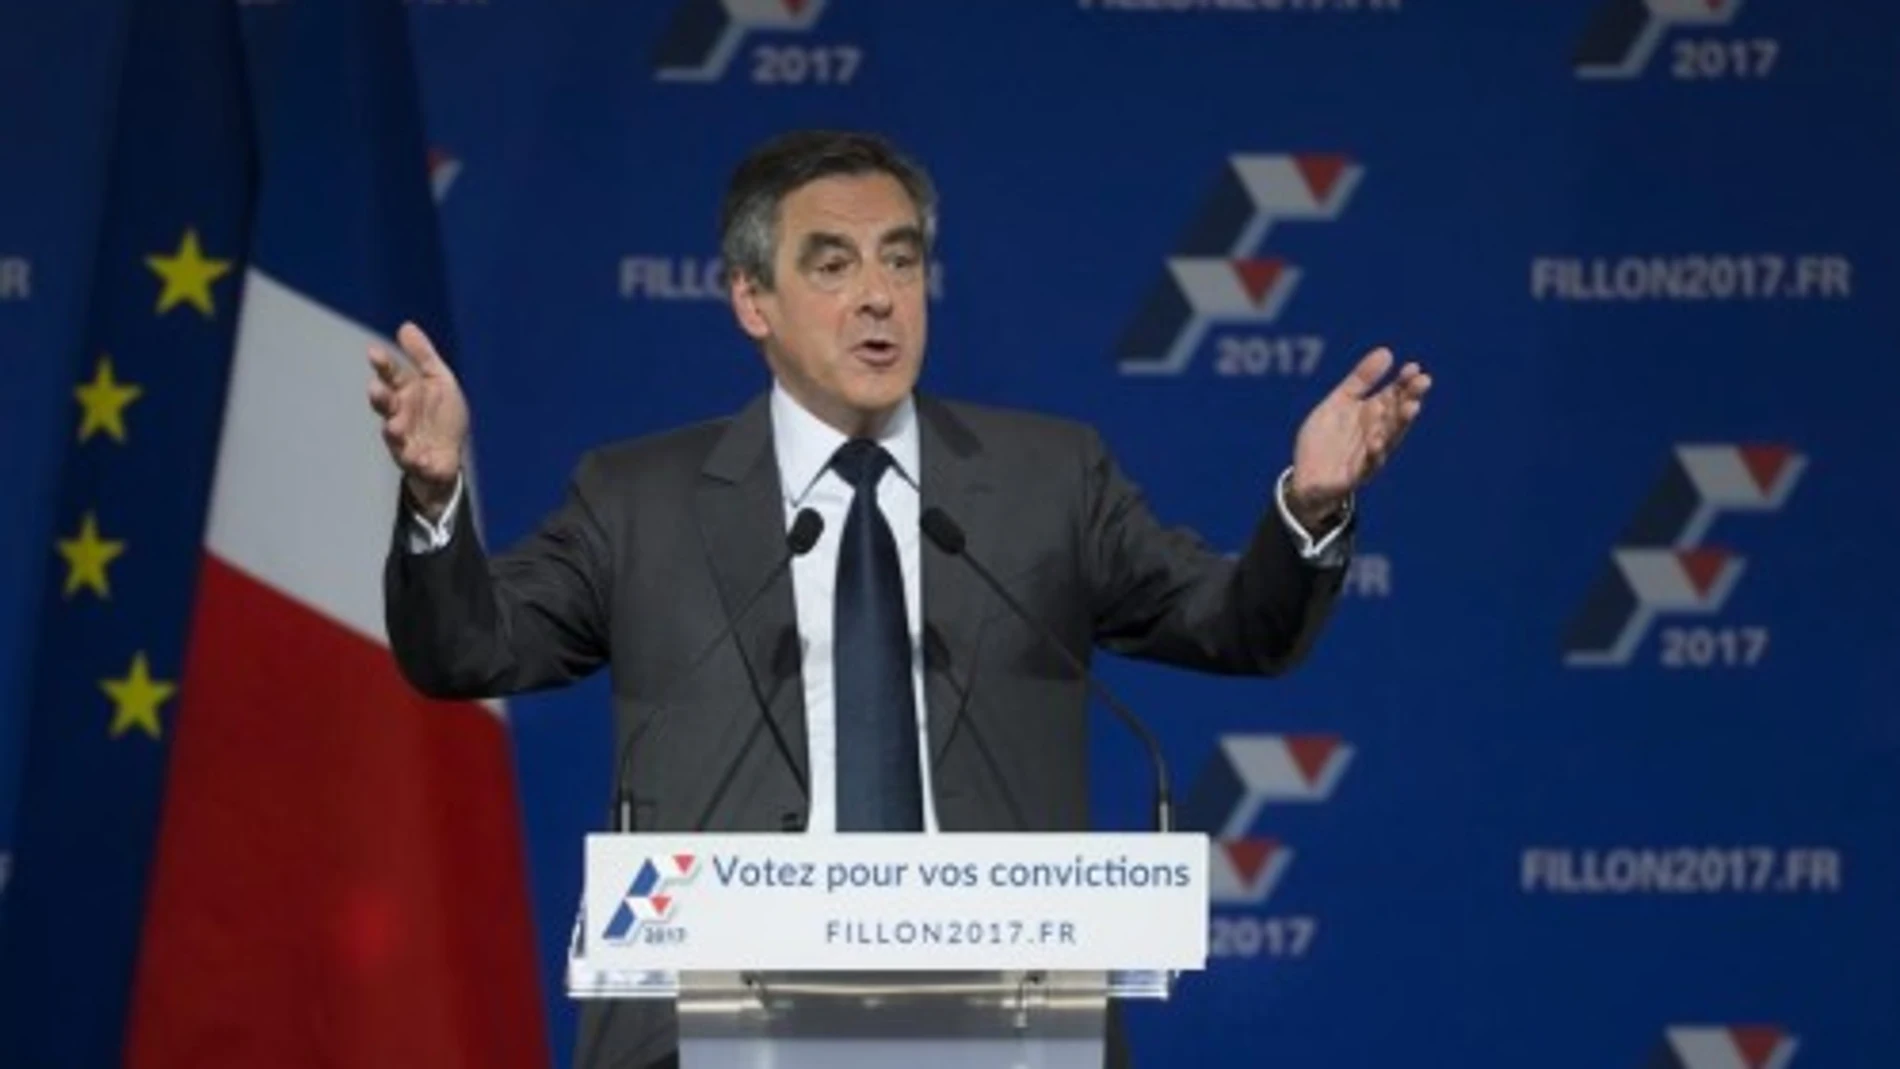 Francia: el siguiente escenario de lucha contra el populismo euroescéptico.